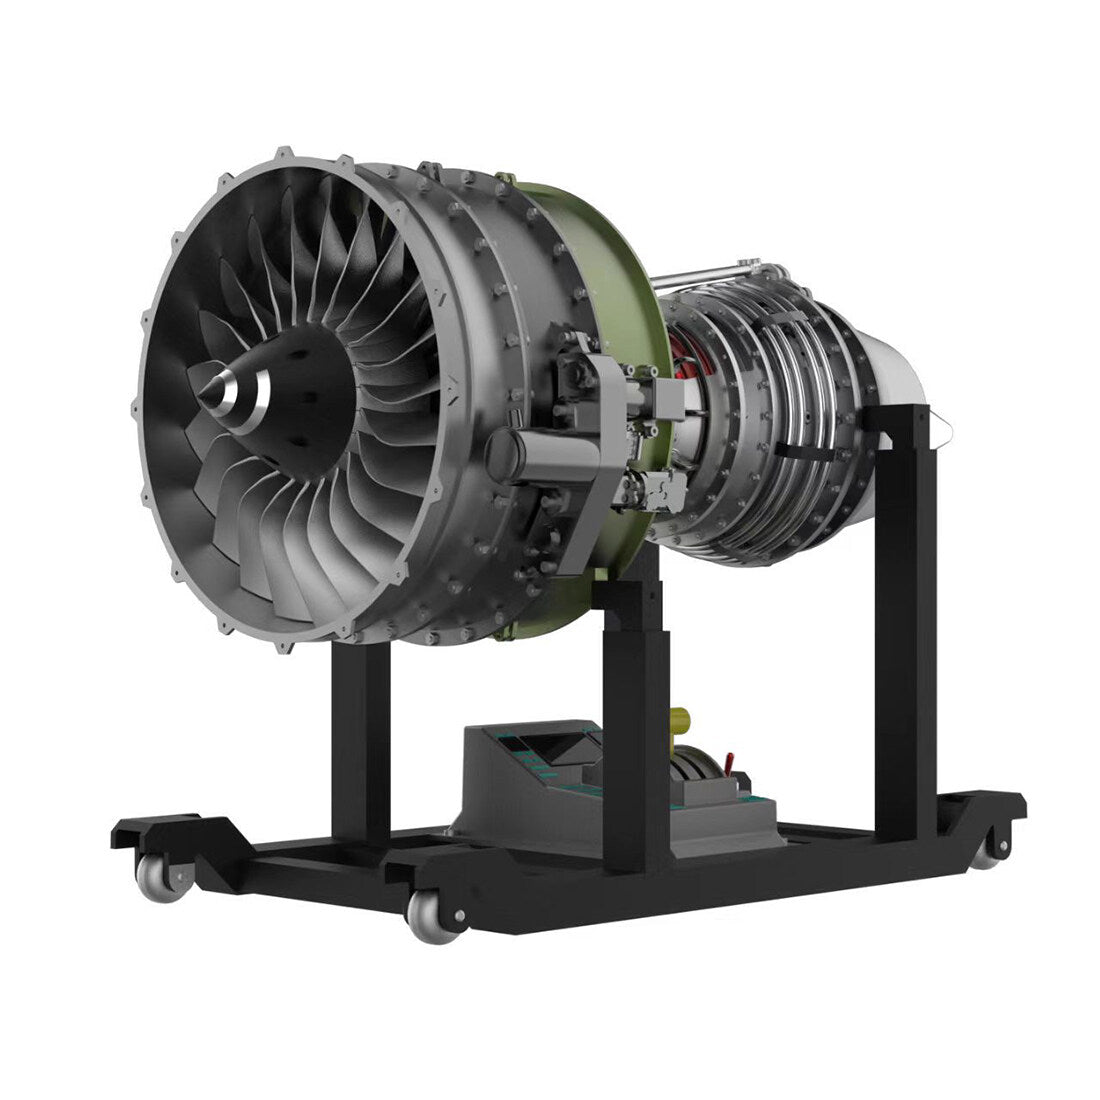 Kit di Modellismo Motore Turboventola Biflusso Meccanico TECHING: Costruisci il Tuo Motore Turboventola per Aerei con più di 1000 Pezzi.